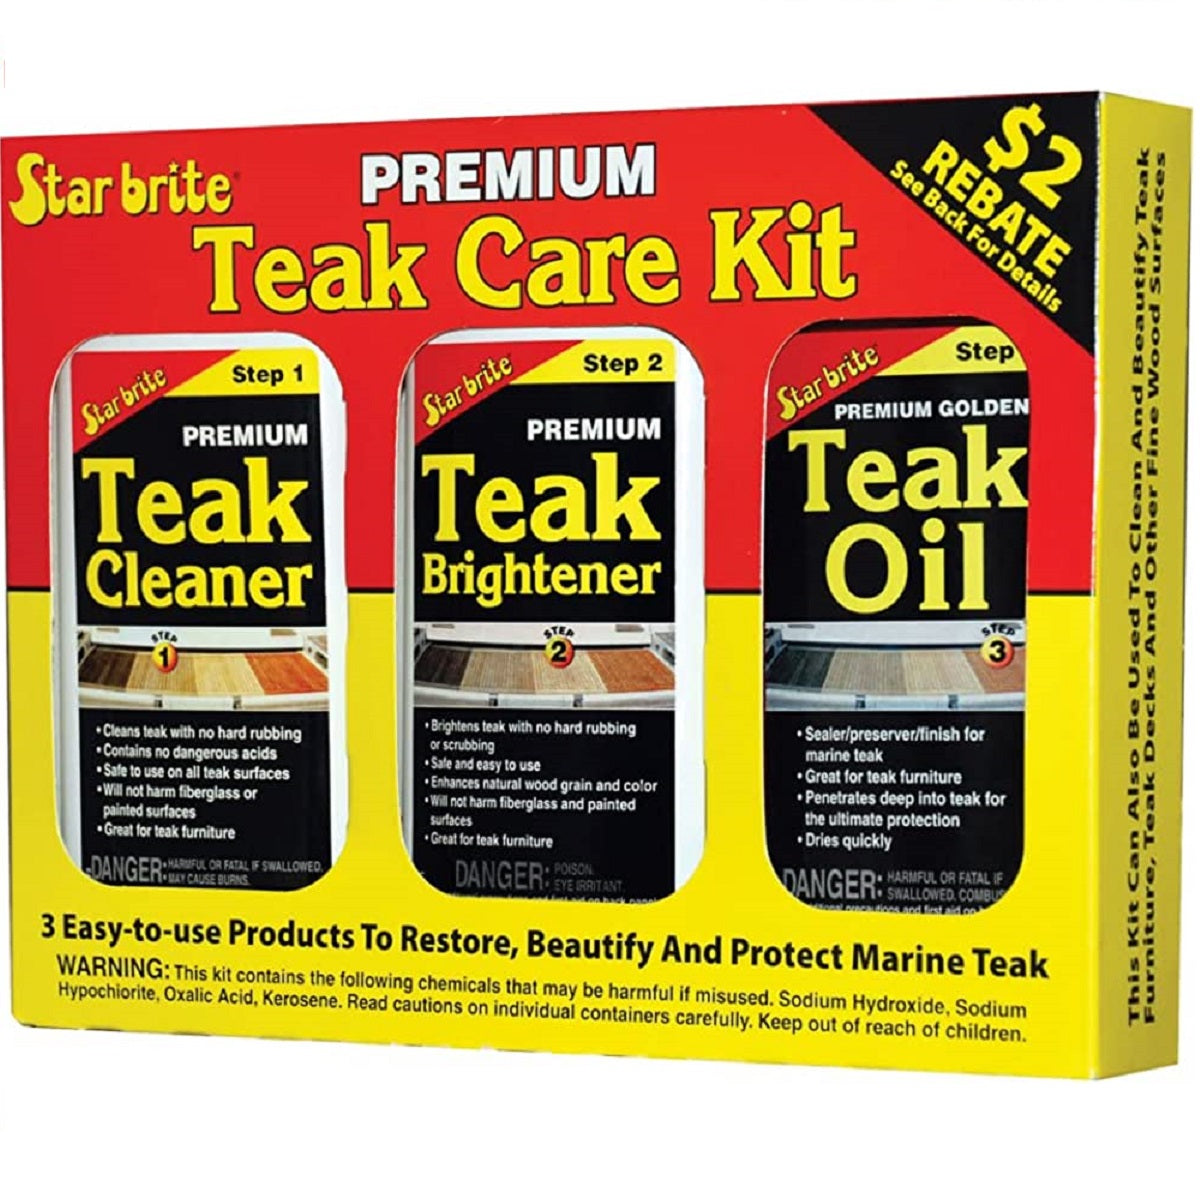 Premium Teak Care Kit